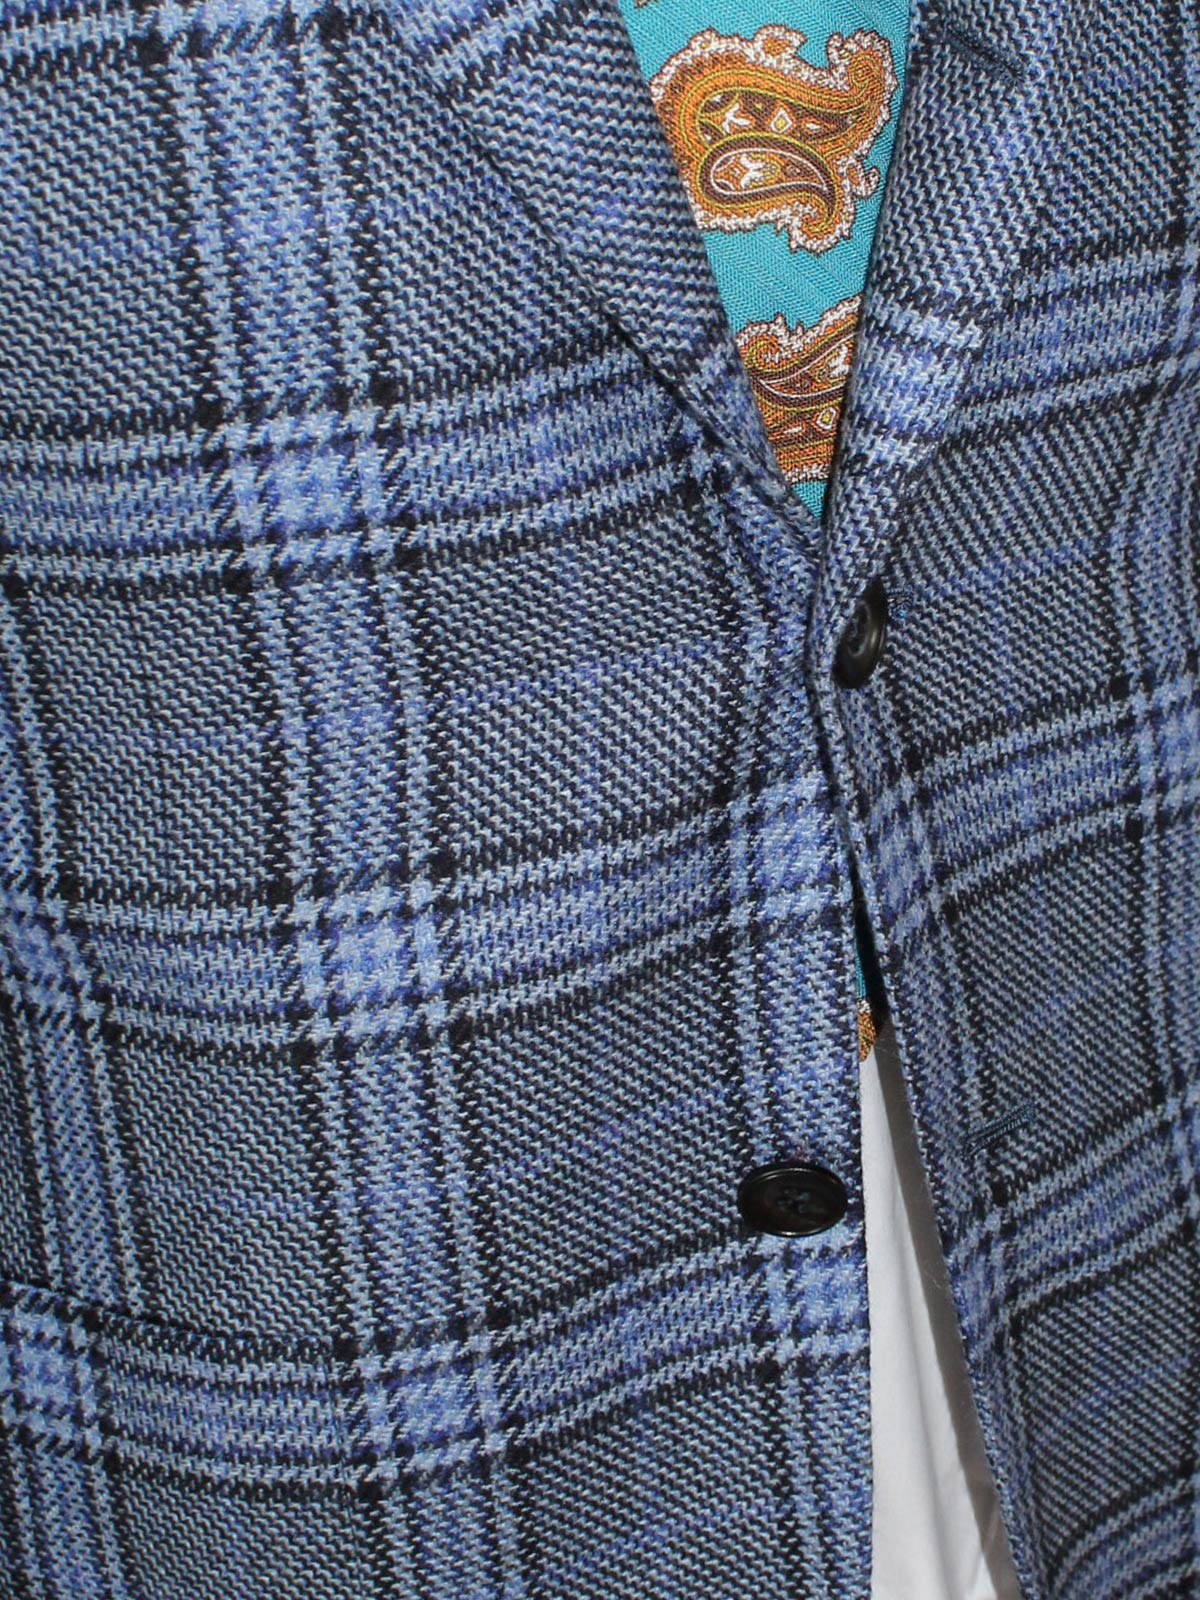 Kiton Cashmere Sport Coat Blue Plaid 